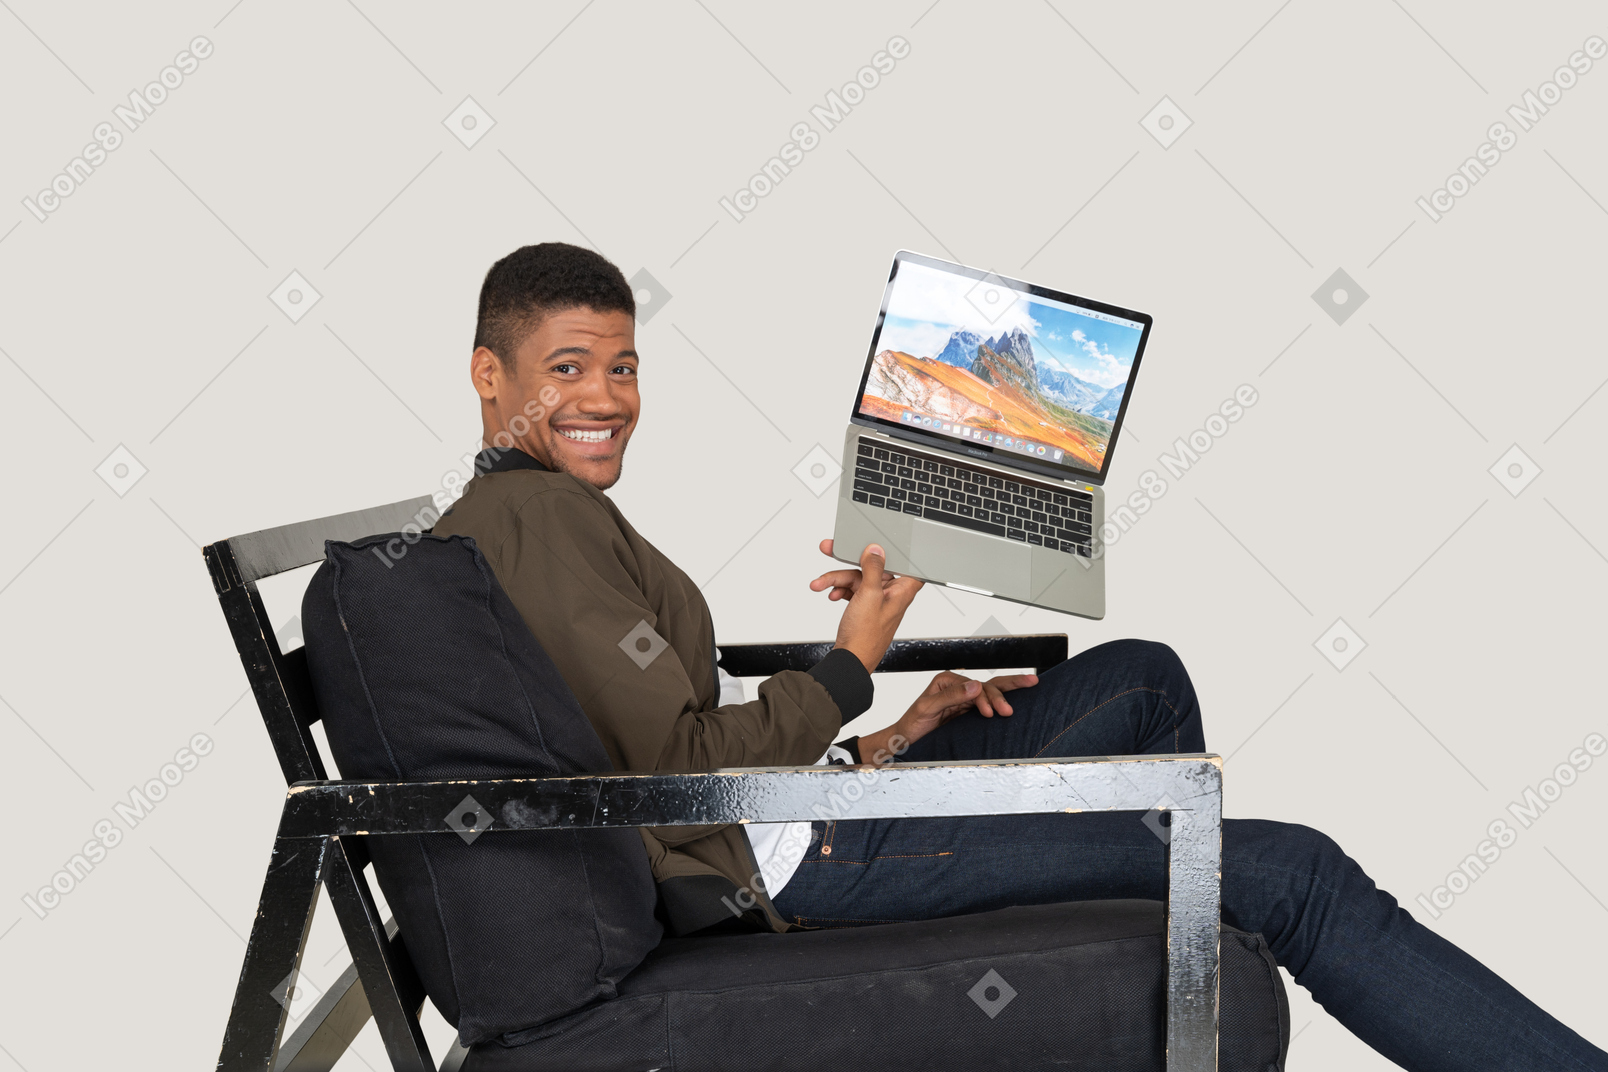 Vista lateral del joven sentado en un sofá y sosteniendo una computadora portátil